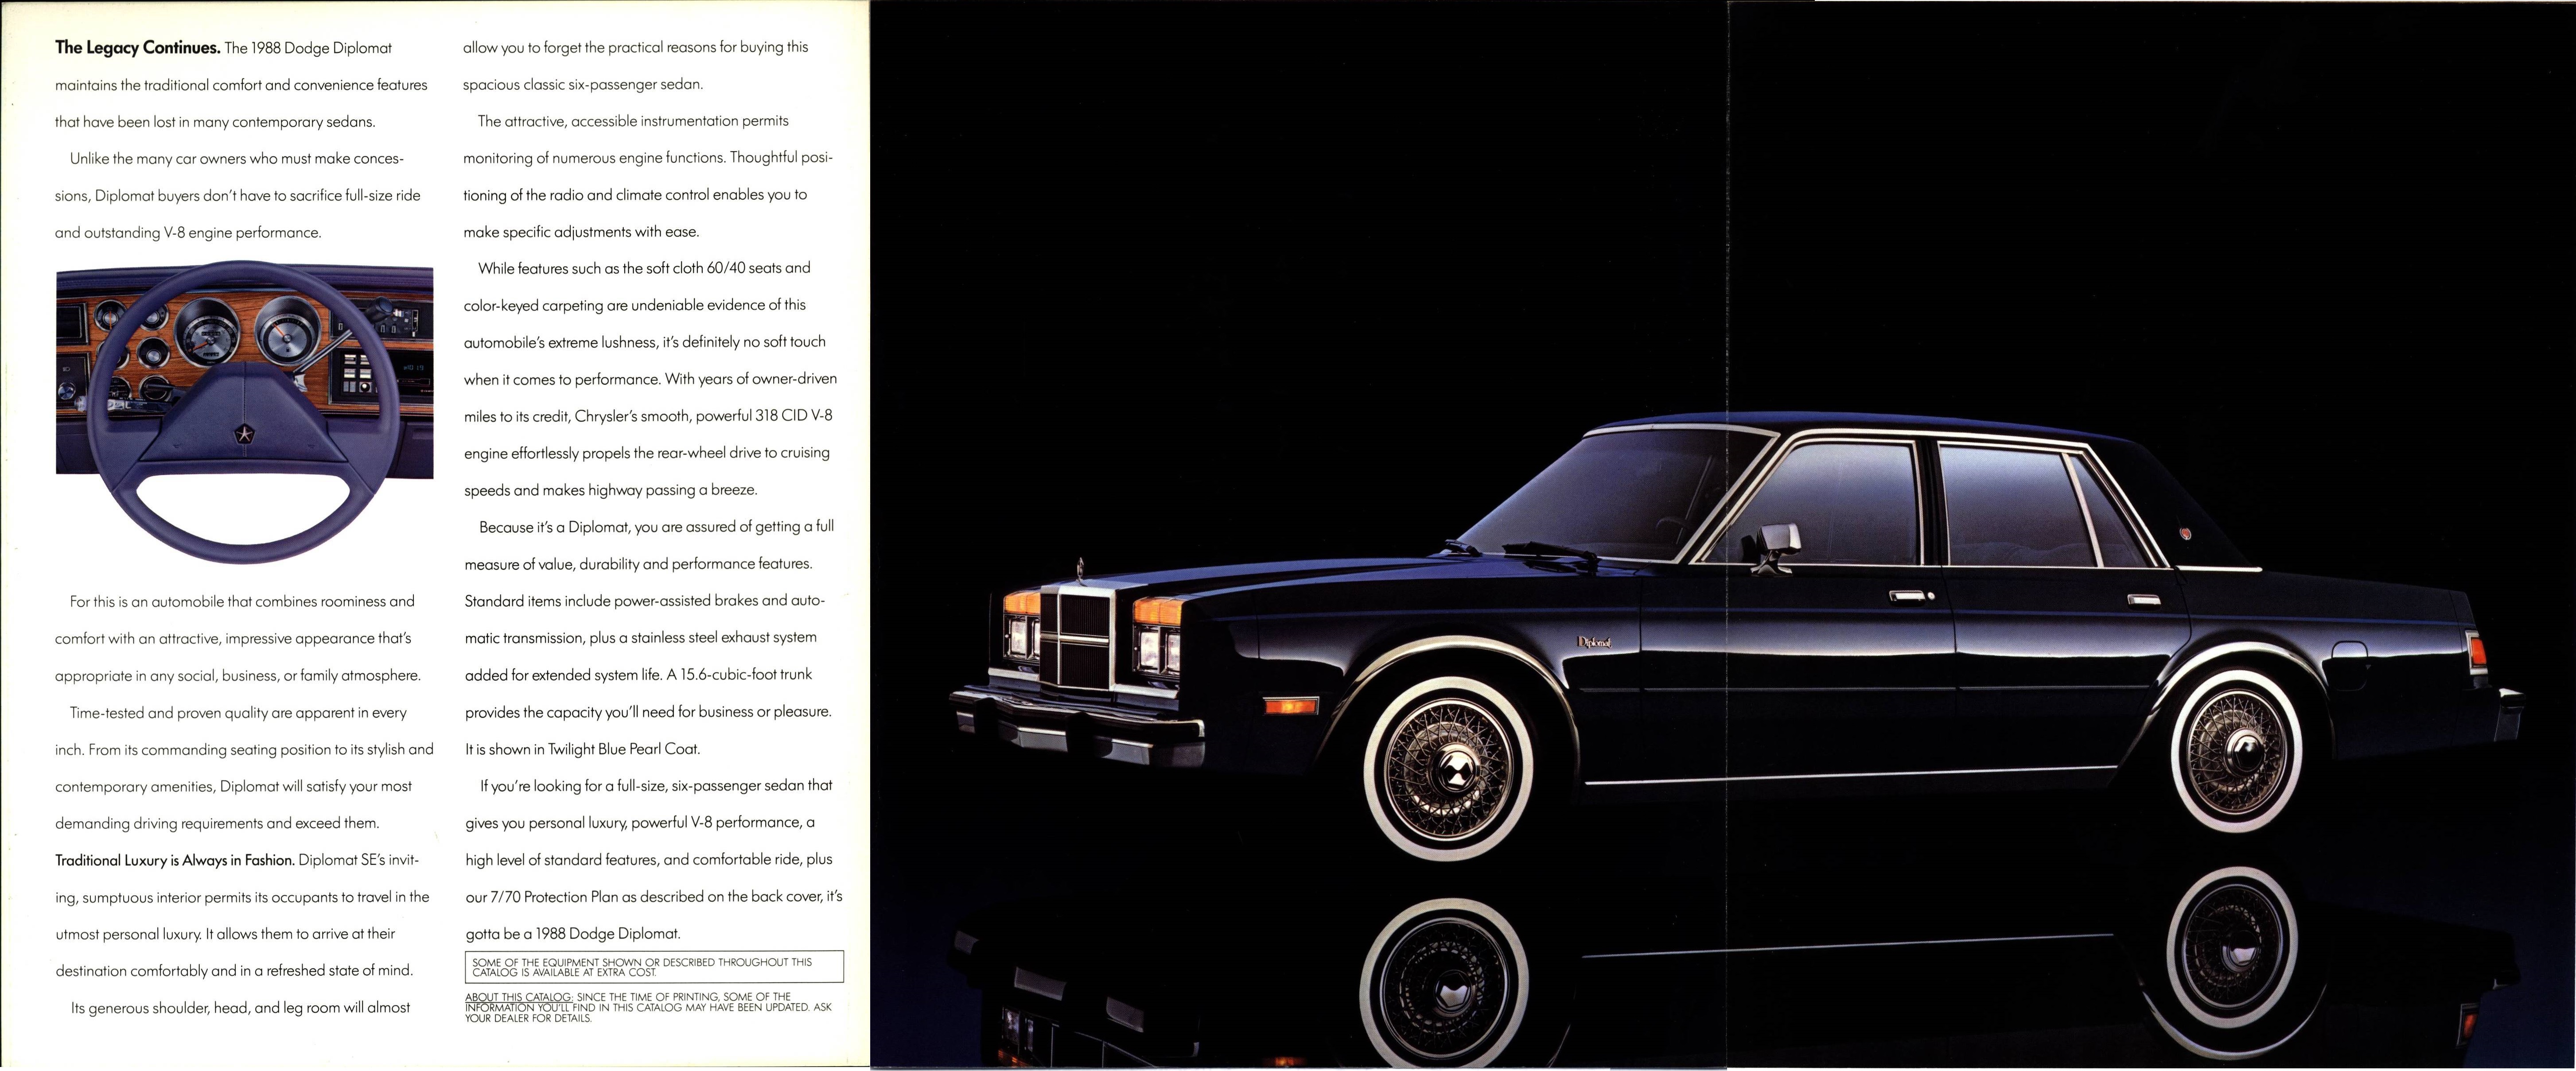 1988 Dodge Diplomat Brochure 02-03-04